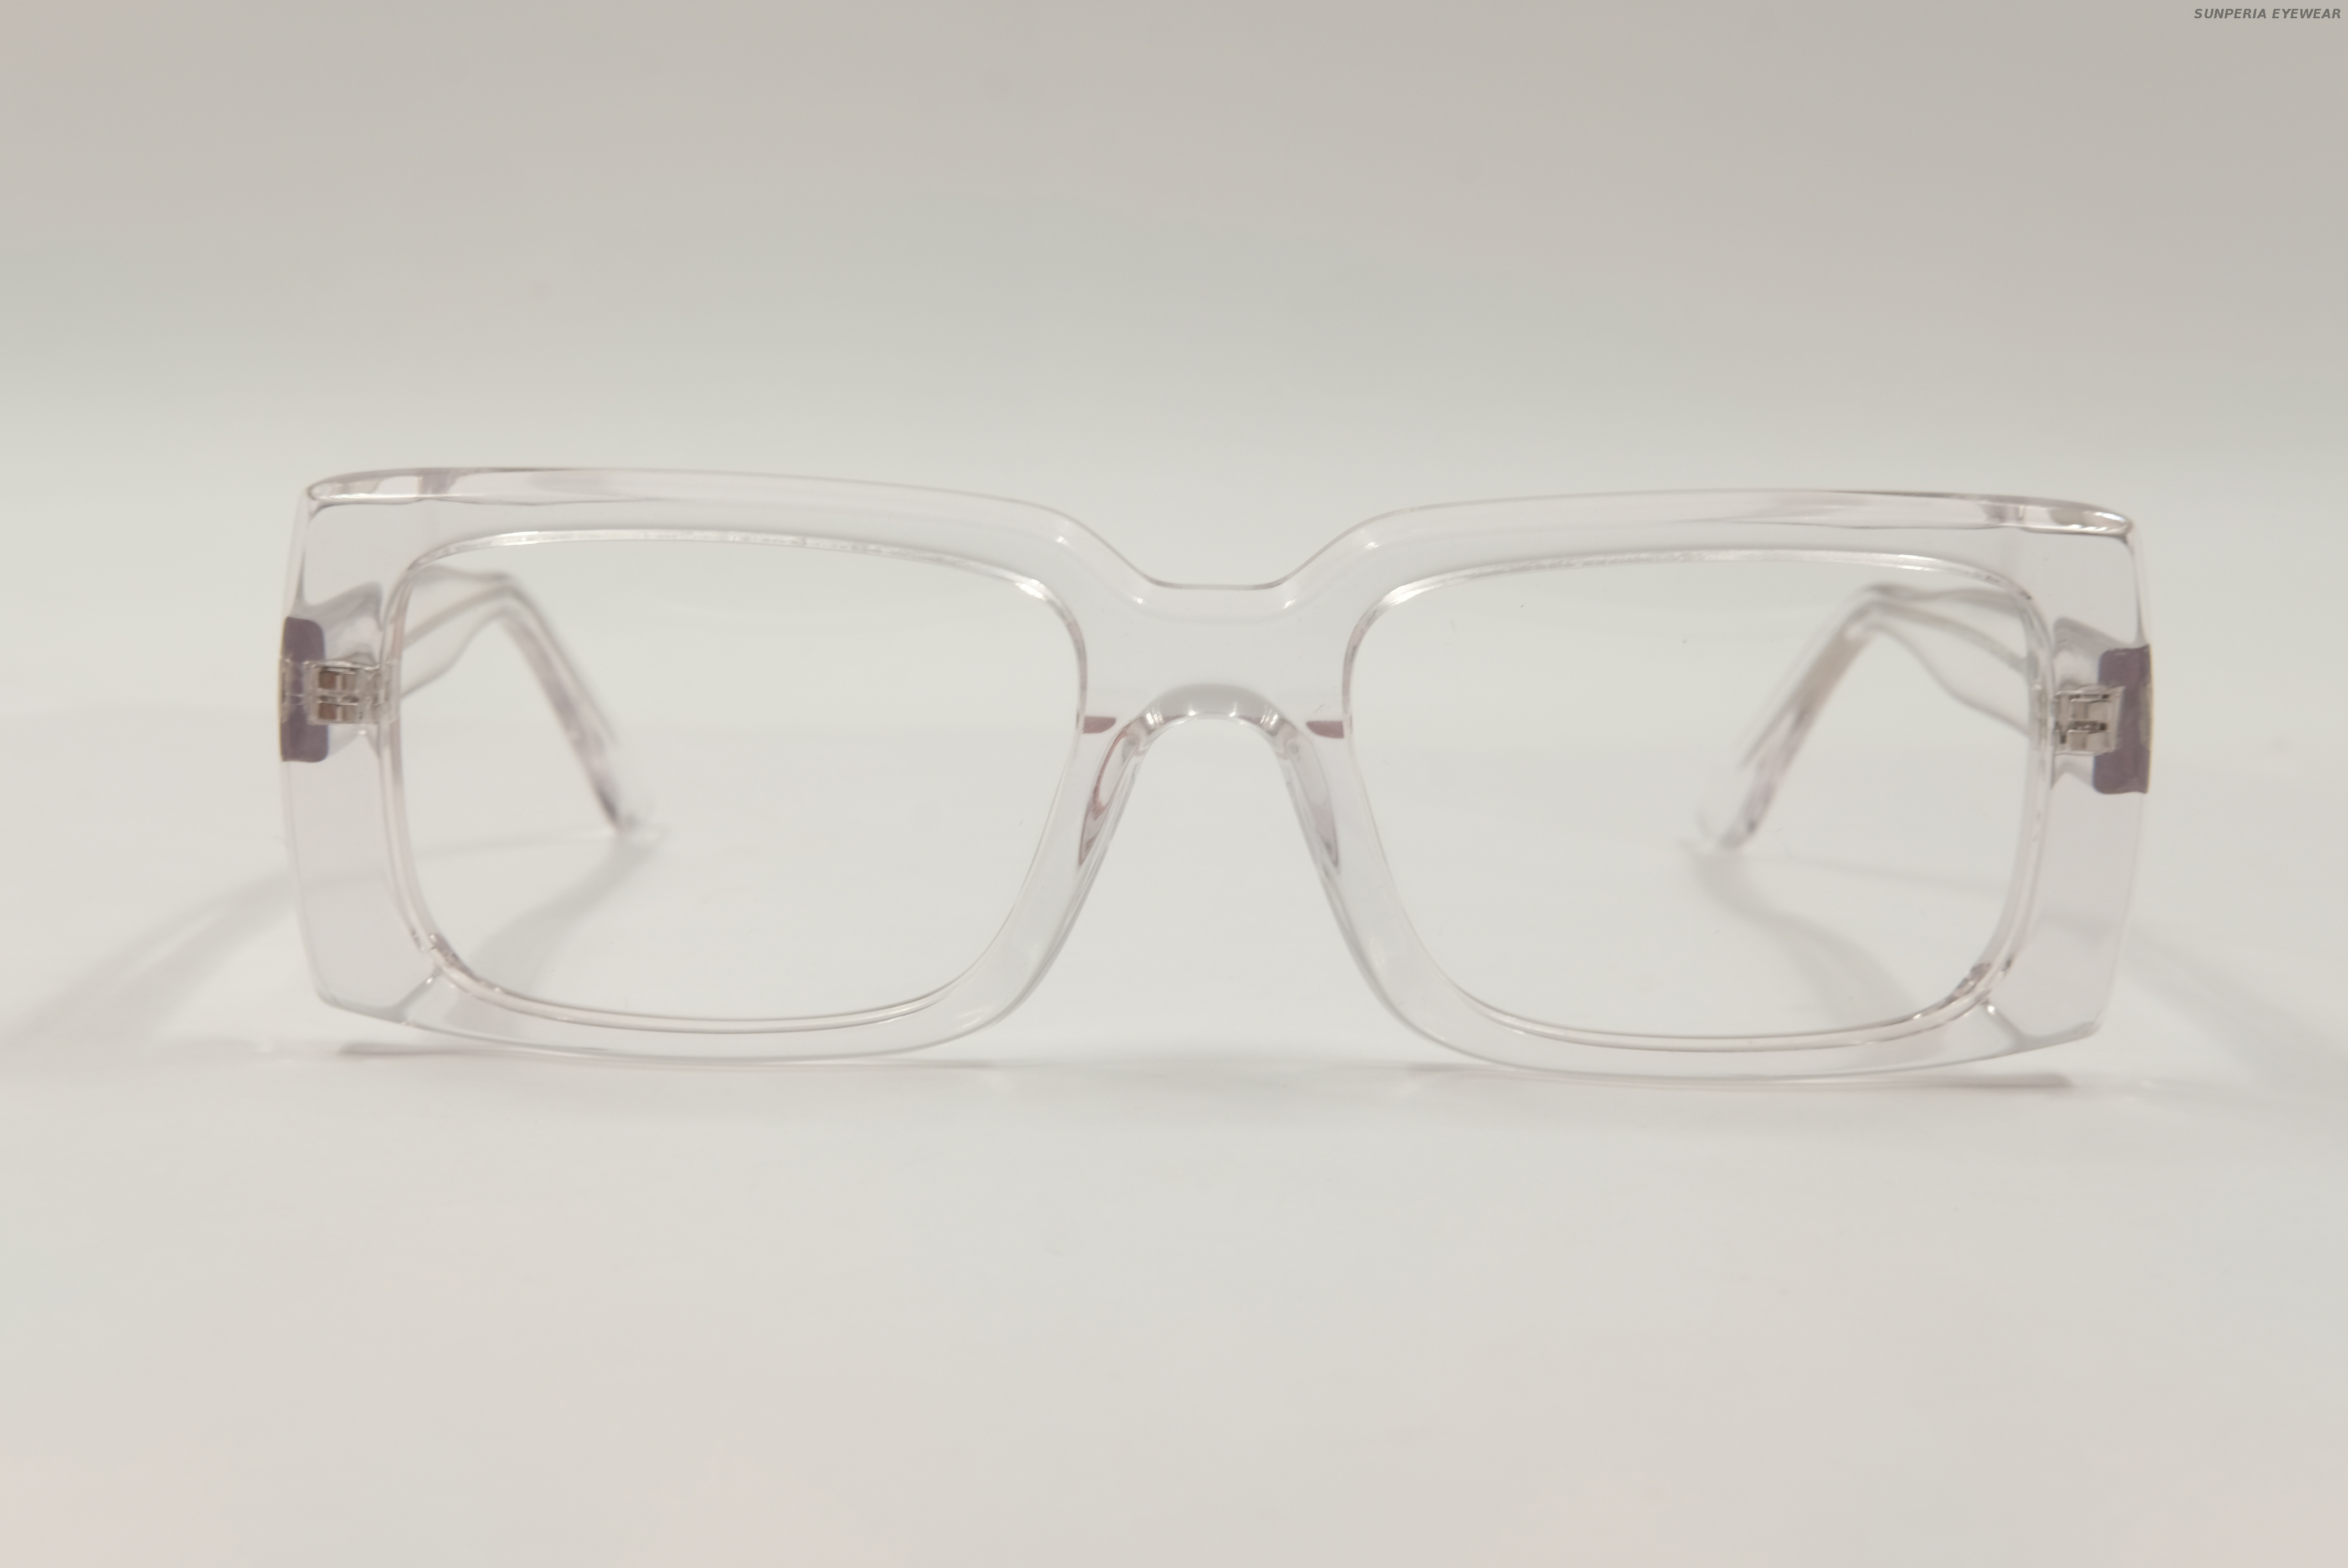 Gafas cuadradas transparentes Gafas Gensun Gafas Sunperia Empresas de gafas Empresas de gafas en línea